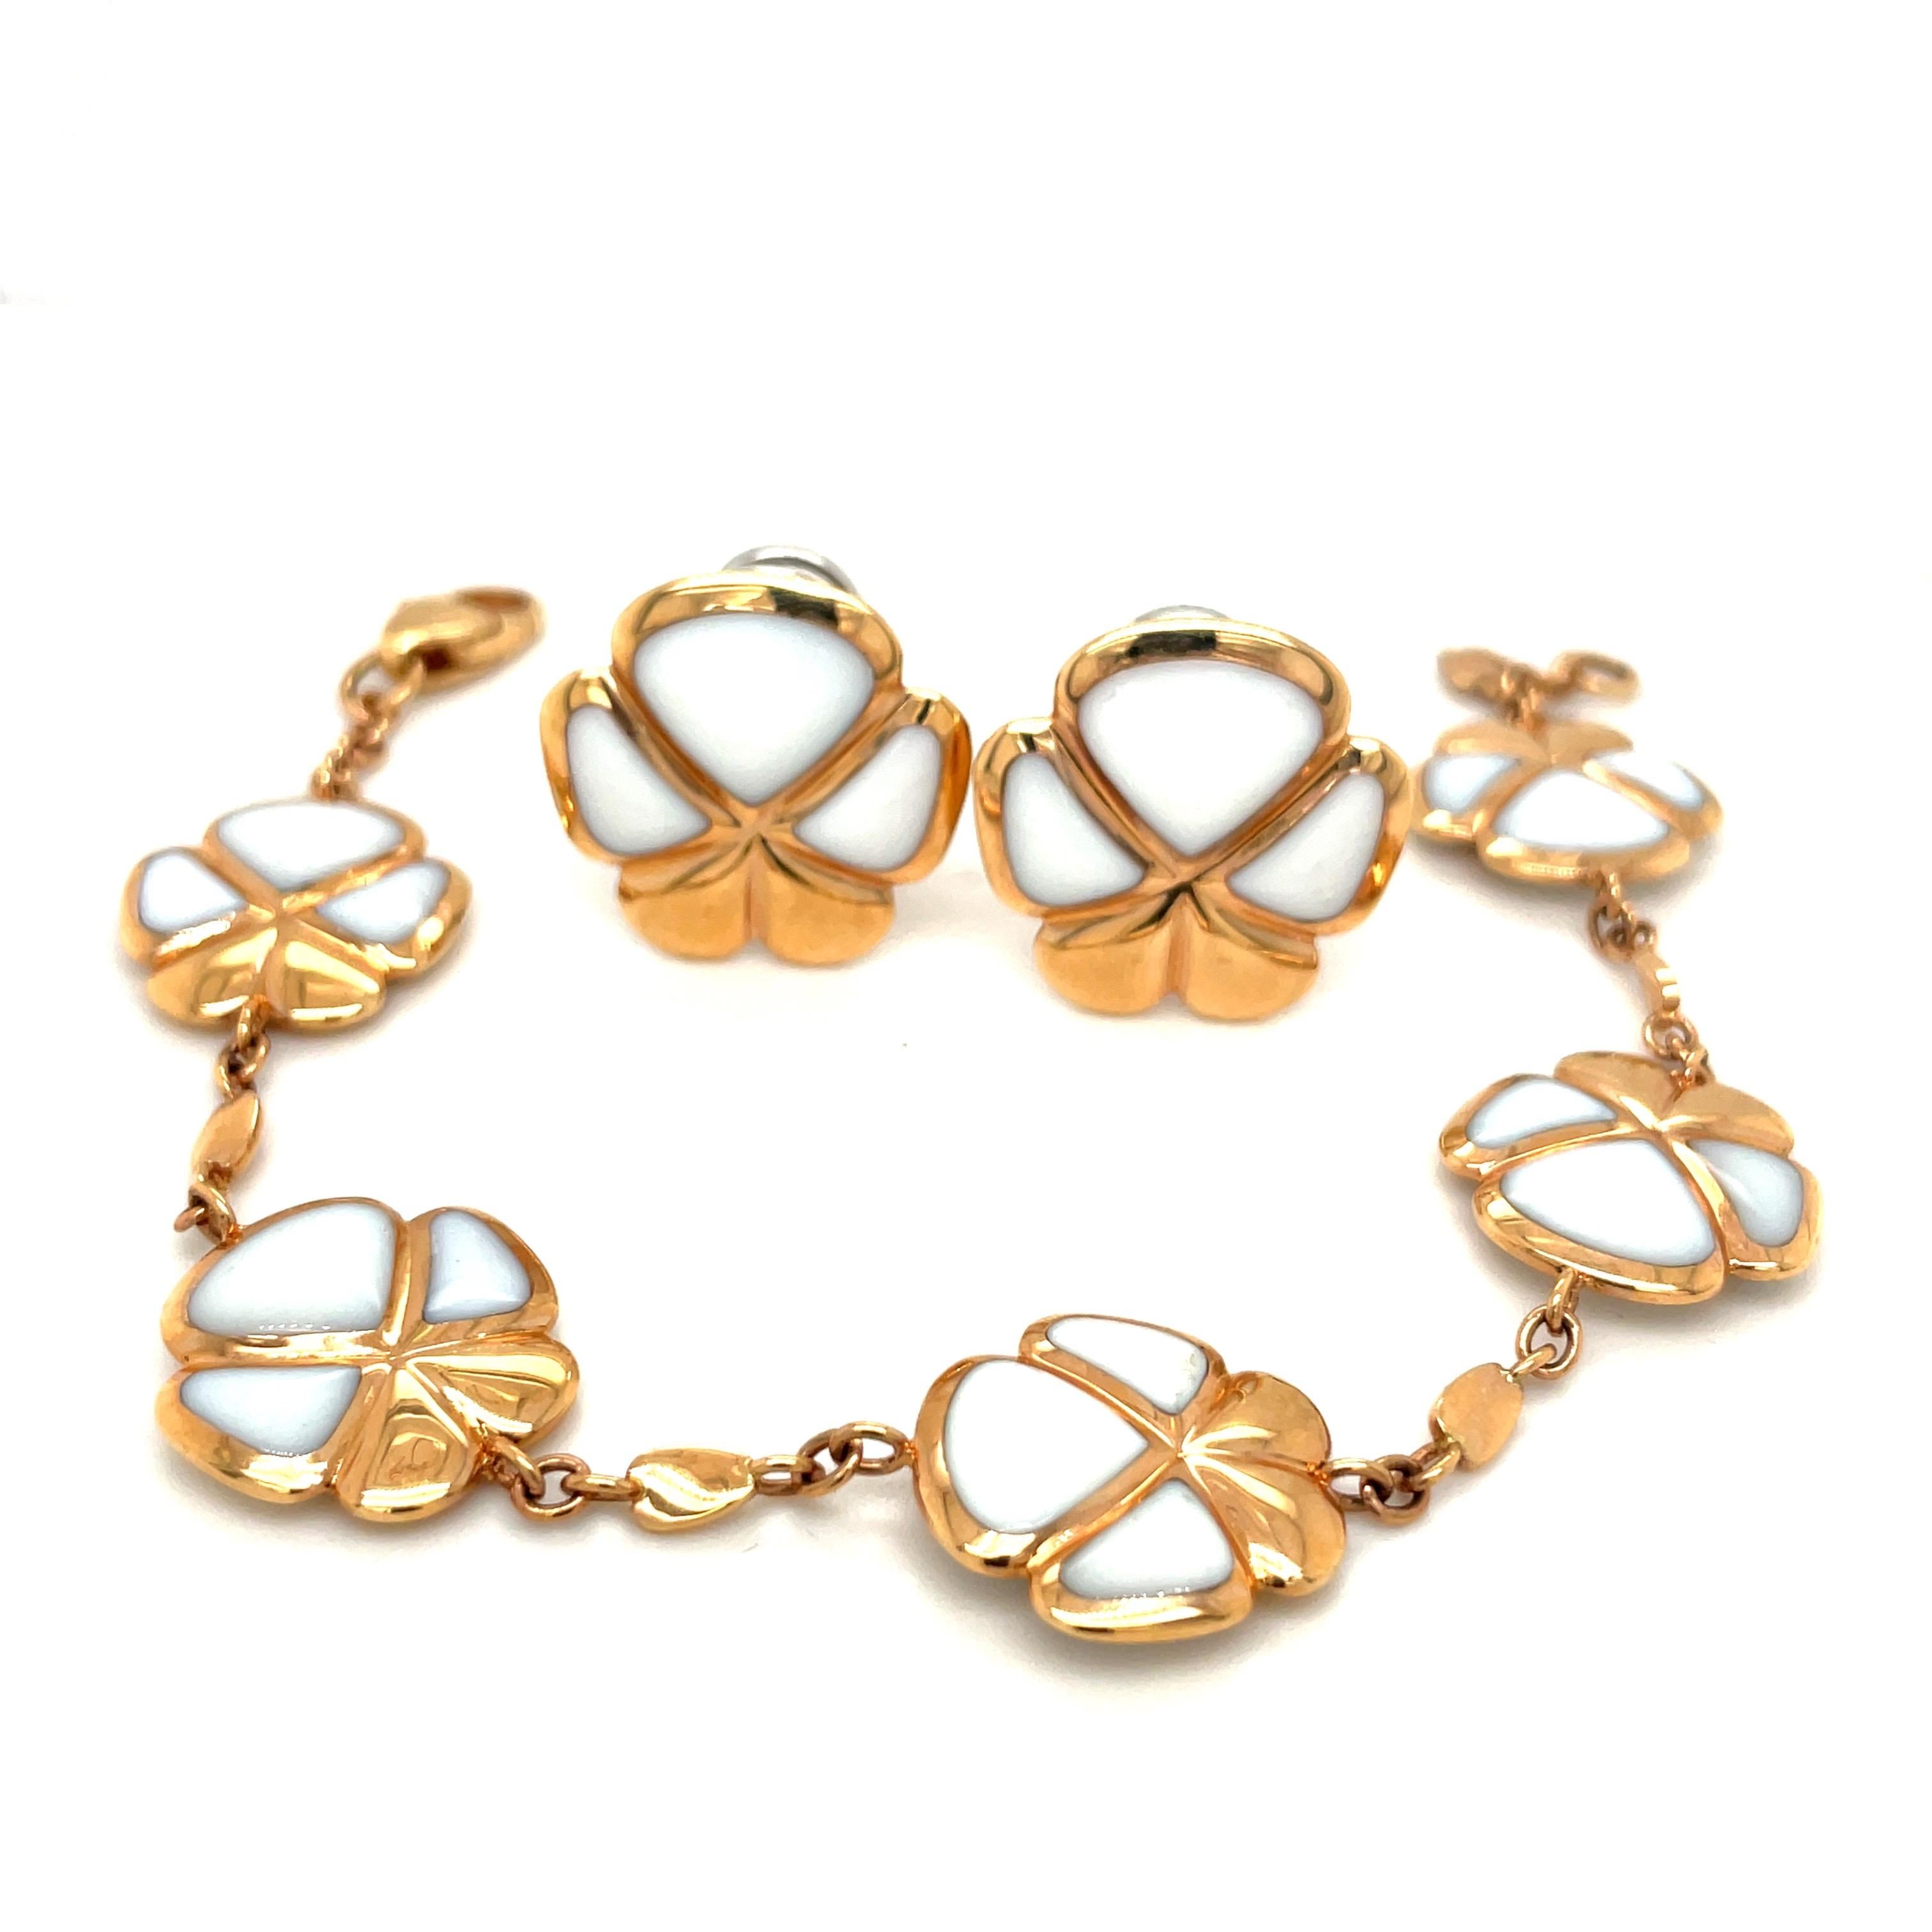 Diese von dem berühmten italienischen Juwelier De AMBROSI exklusiv für Cellini Jewelers entworfenen fünfblättrigen Glücksklee-Ohrringe sind mit weißem Kogolong in 18-karätigem Roségold eingelegt.

Die Viola-Kollektion von Cellini besteht aus einer